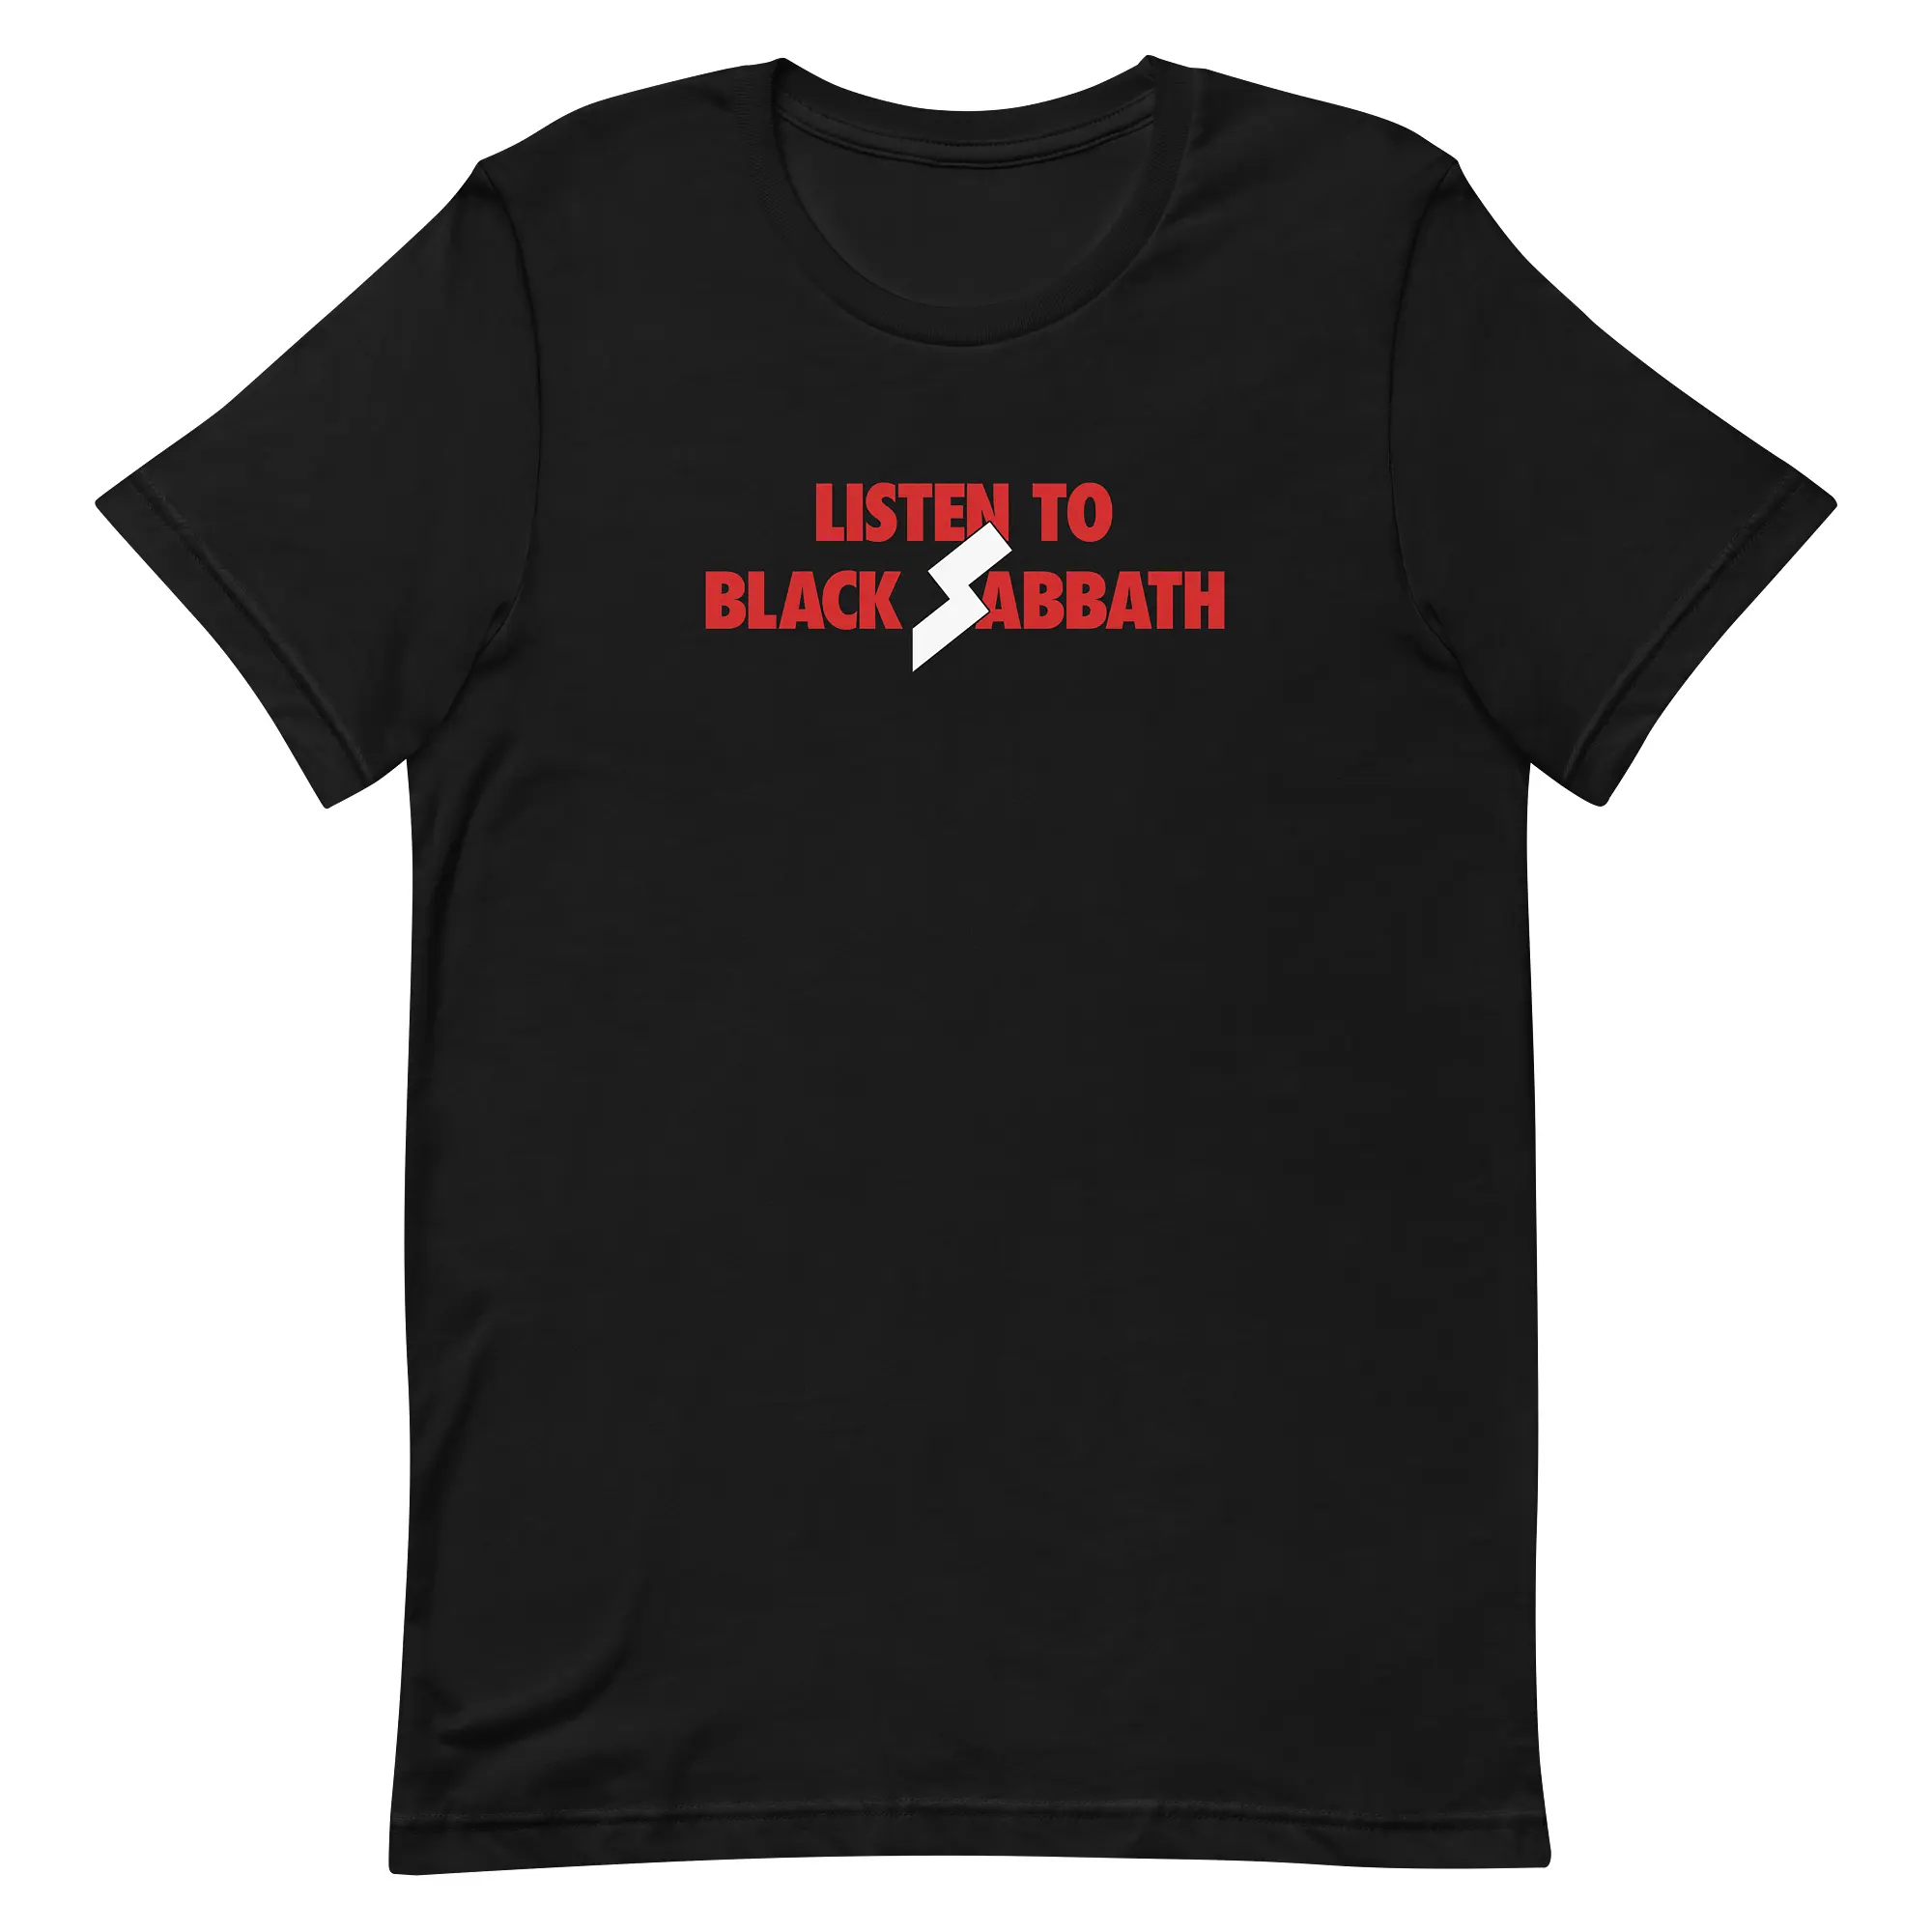 Listen to Black Sabbath